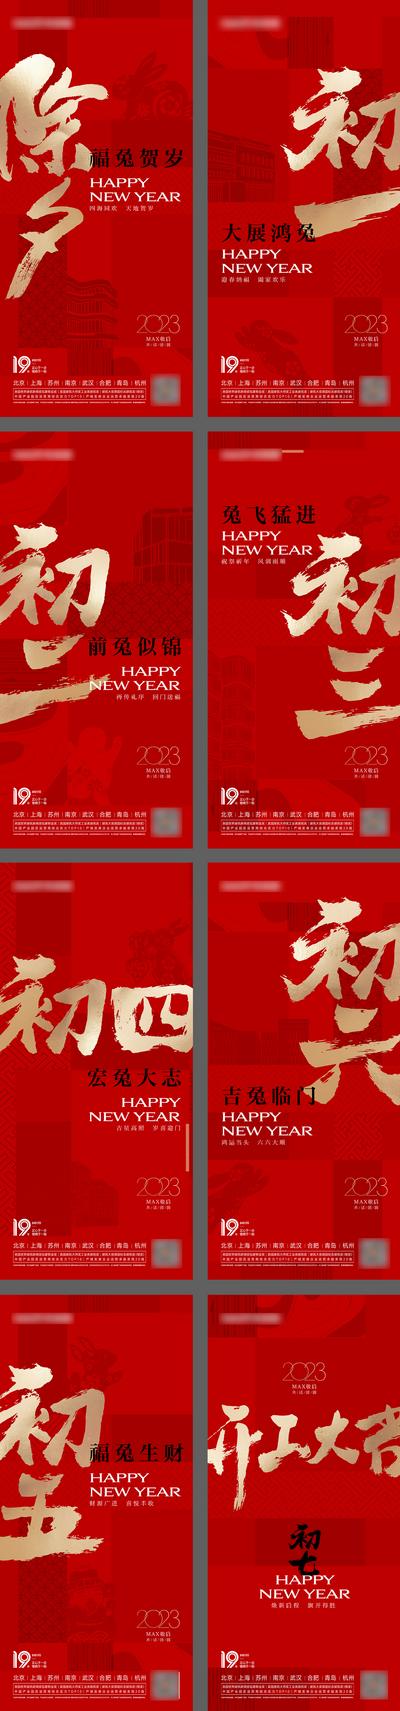 南门网 广告 海报 兔年 春节 2023 大年初一 初一 红金 品质 除夕